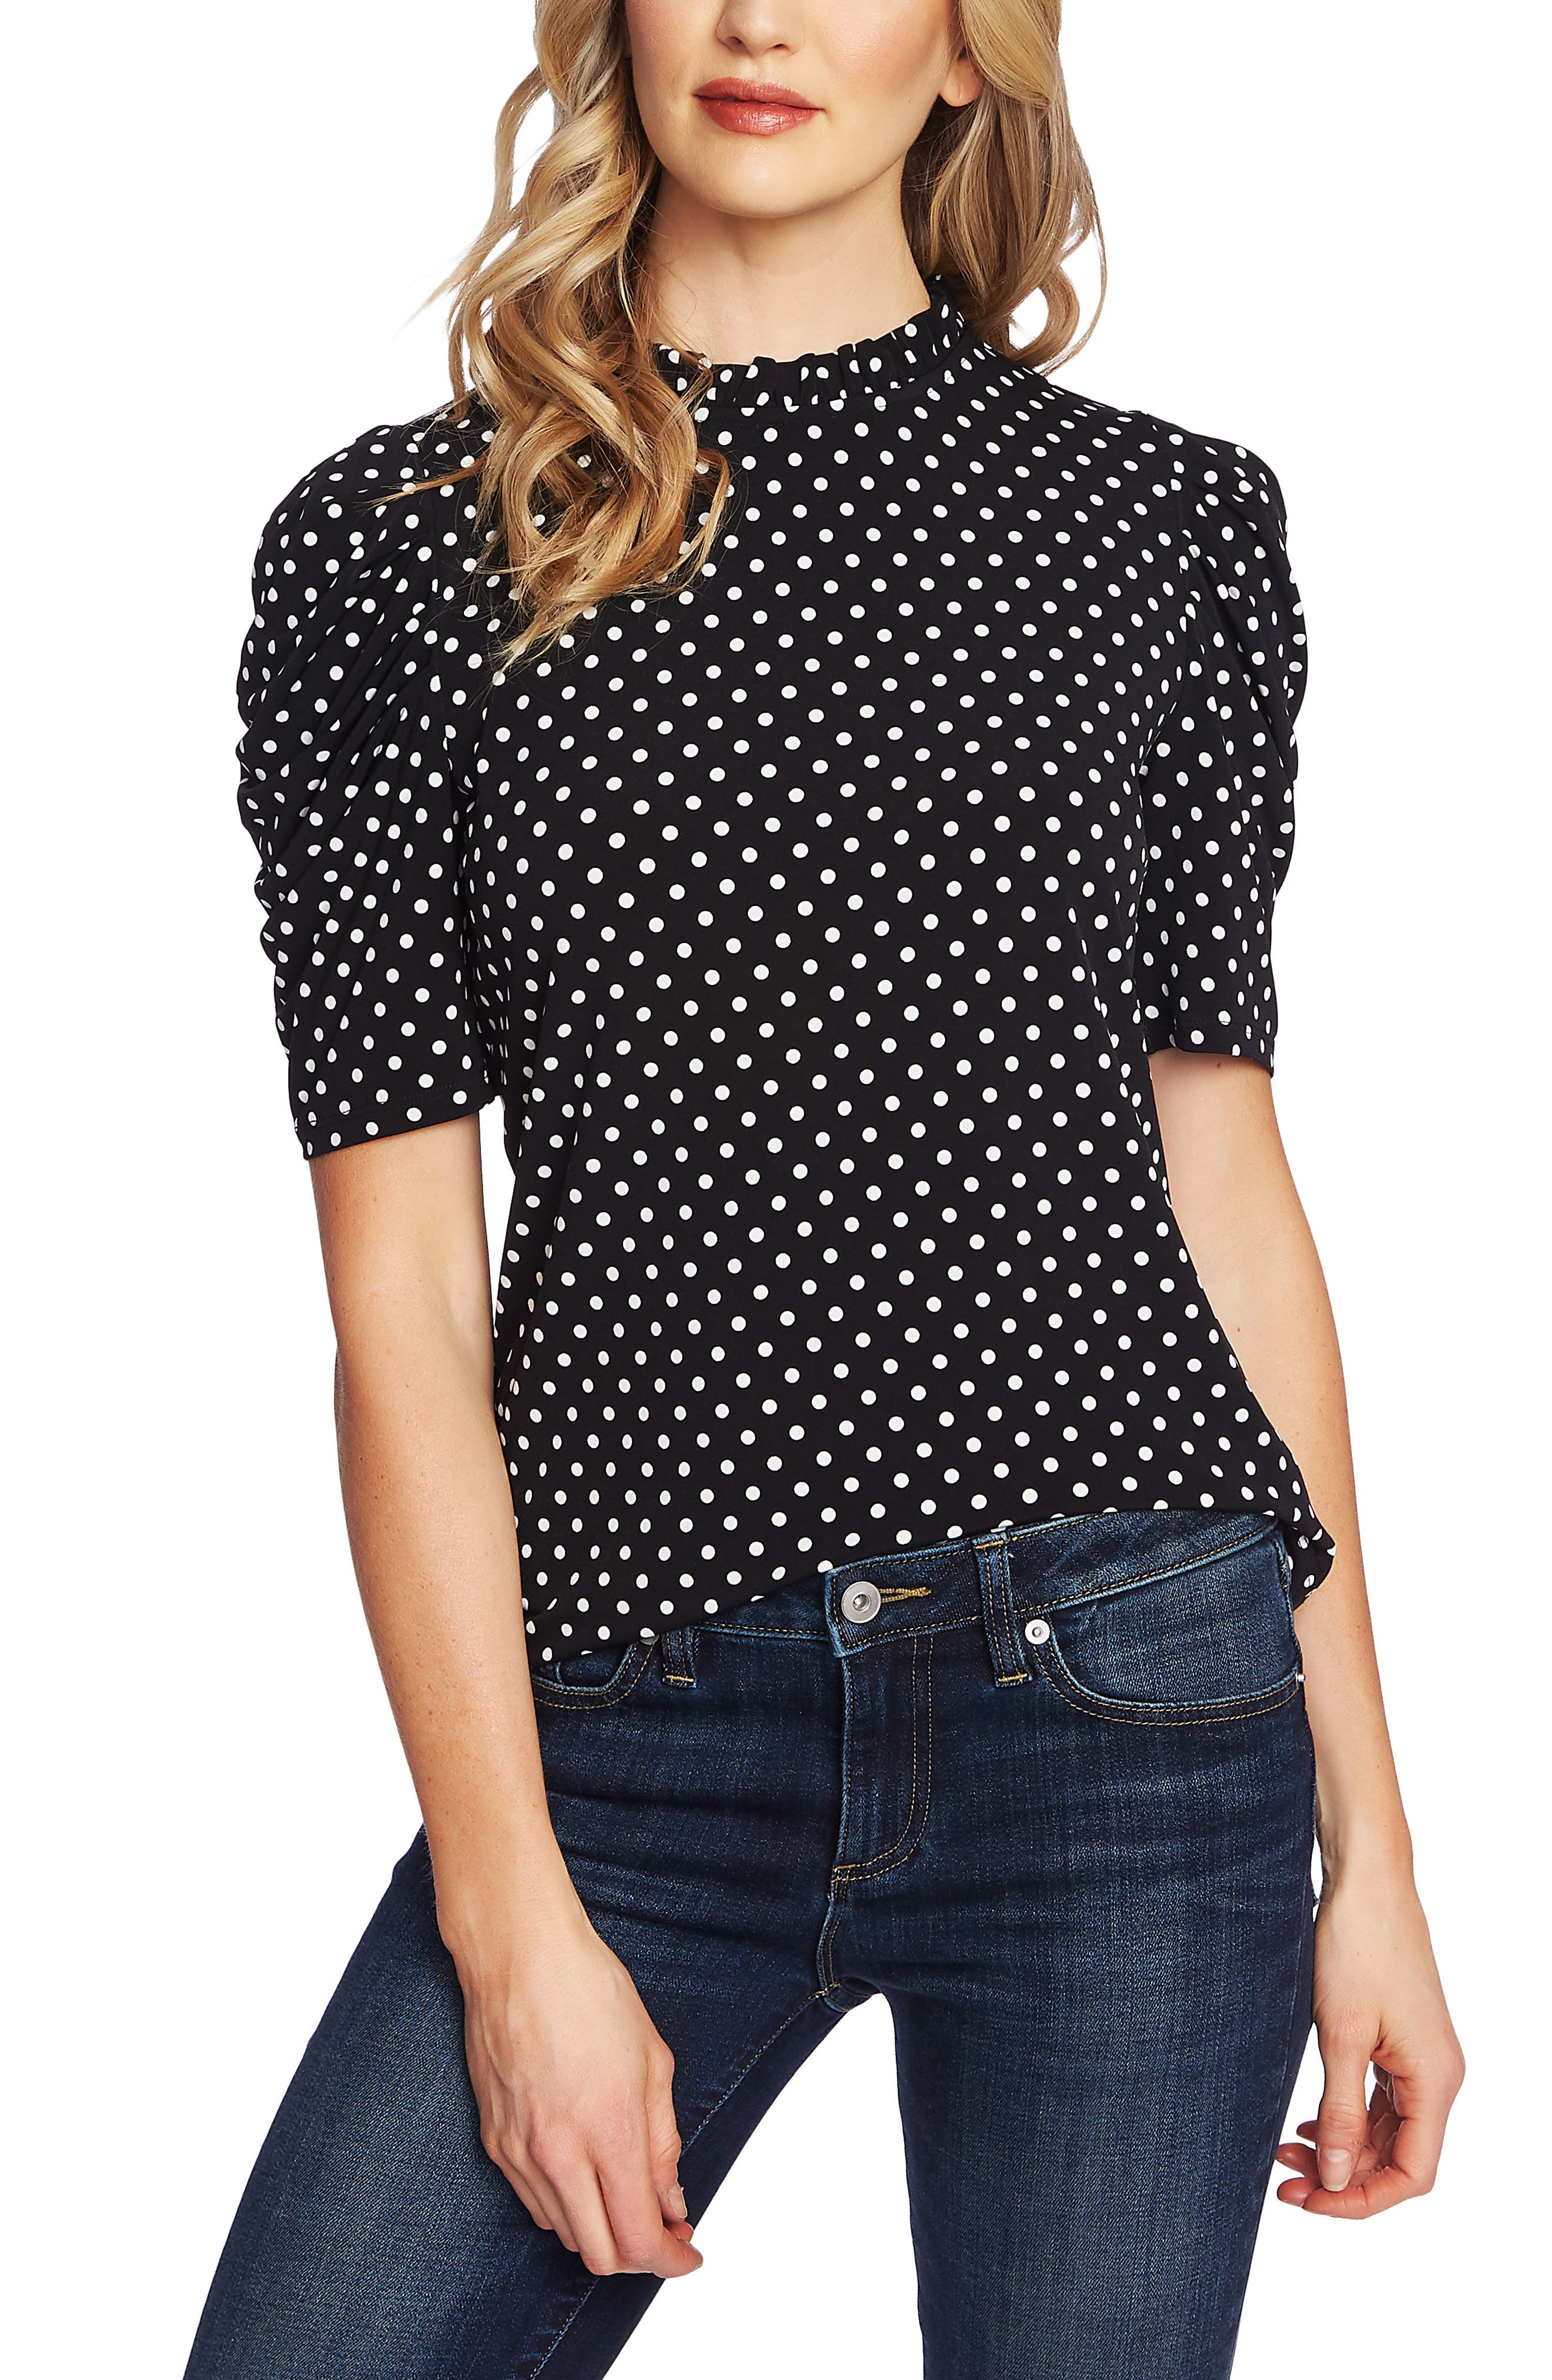 New Polka Dot Frill Top Womens Summer Holiday Short Sleeve Spot Crop Top Cheap